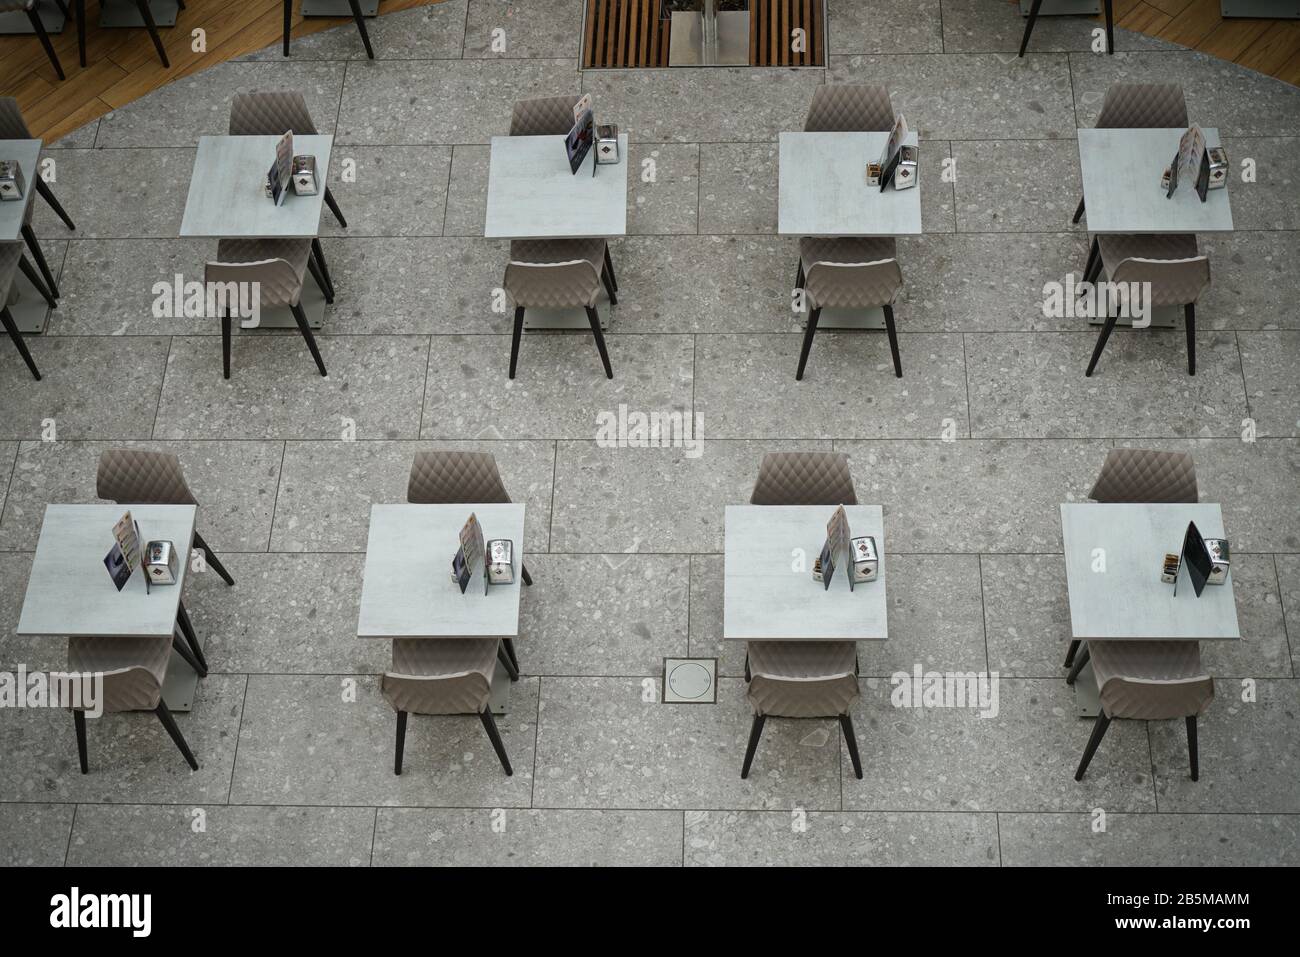 Coronavirus Impact, ristorante vuoto e tavoli da caffetteria. Milano, Italia - Marzo 2020 Foto Stock